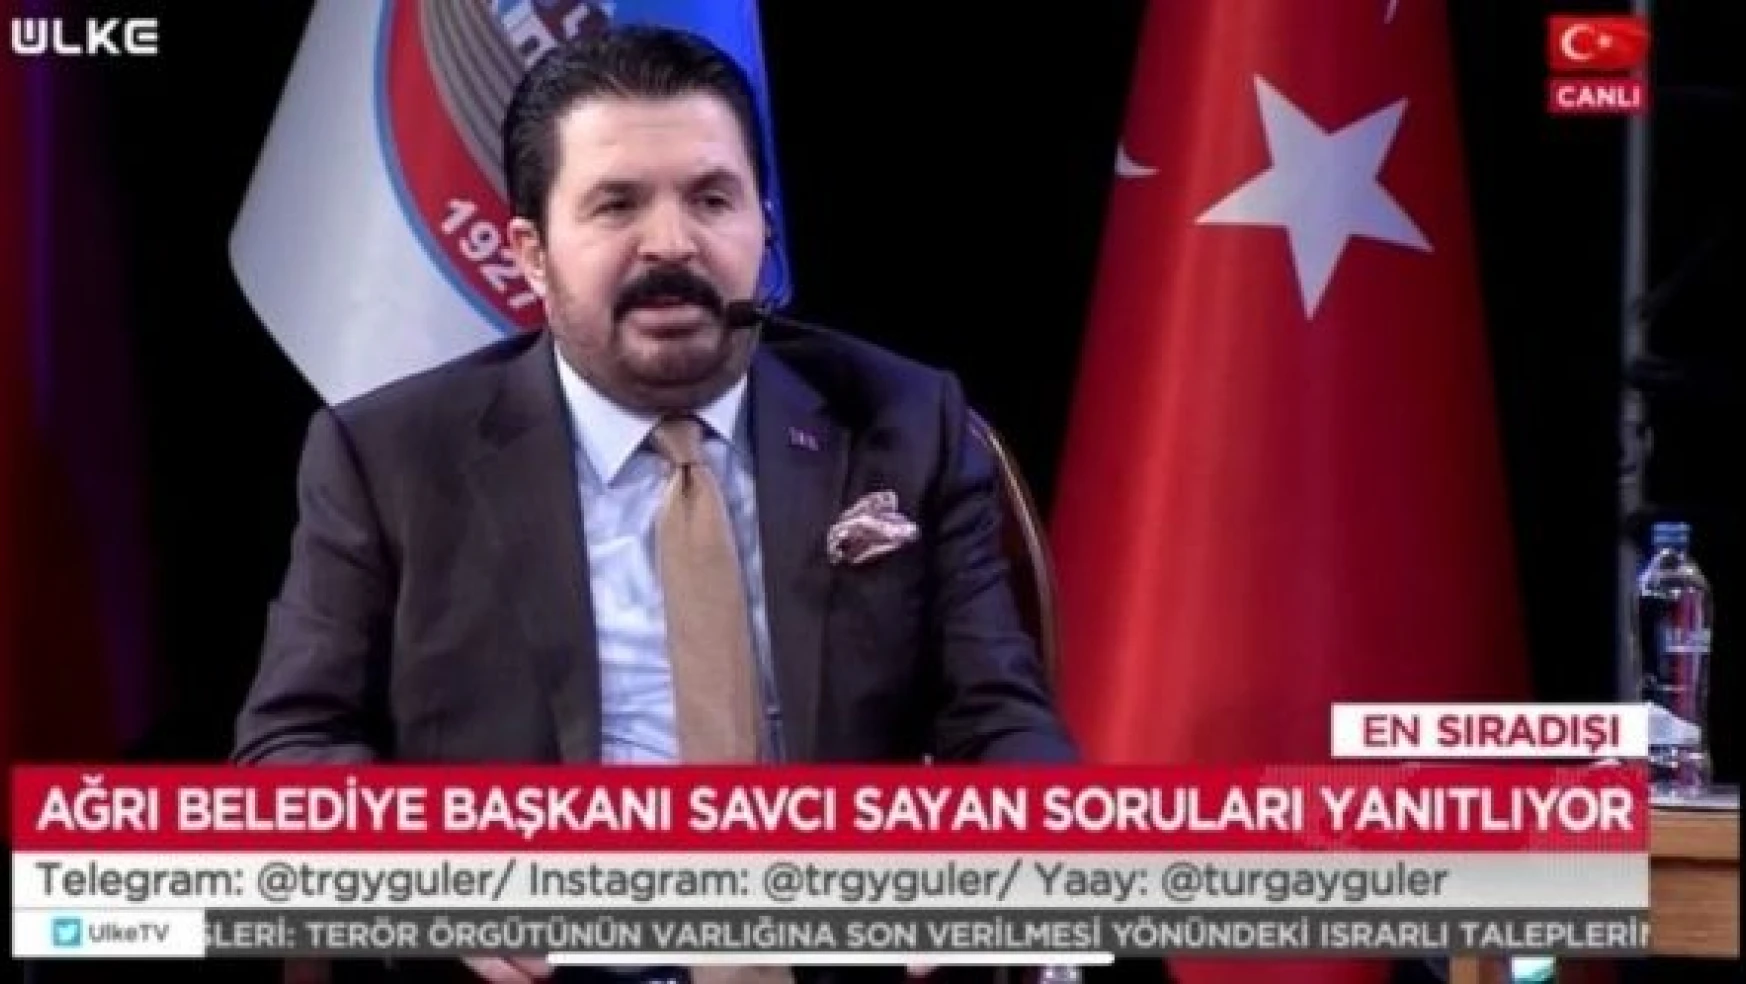 Savcı Sayan: 'Kılıçdaroğlu'nun faturalarını ödeyeceğim'